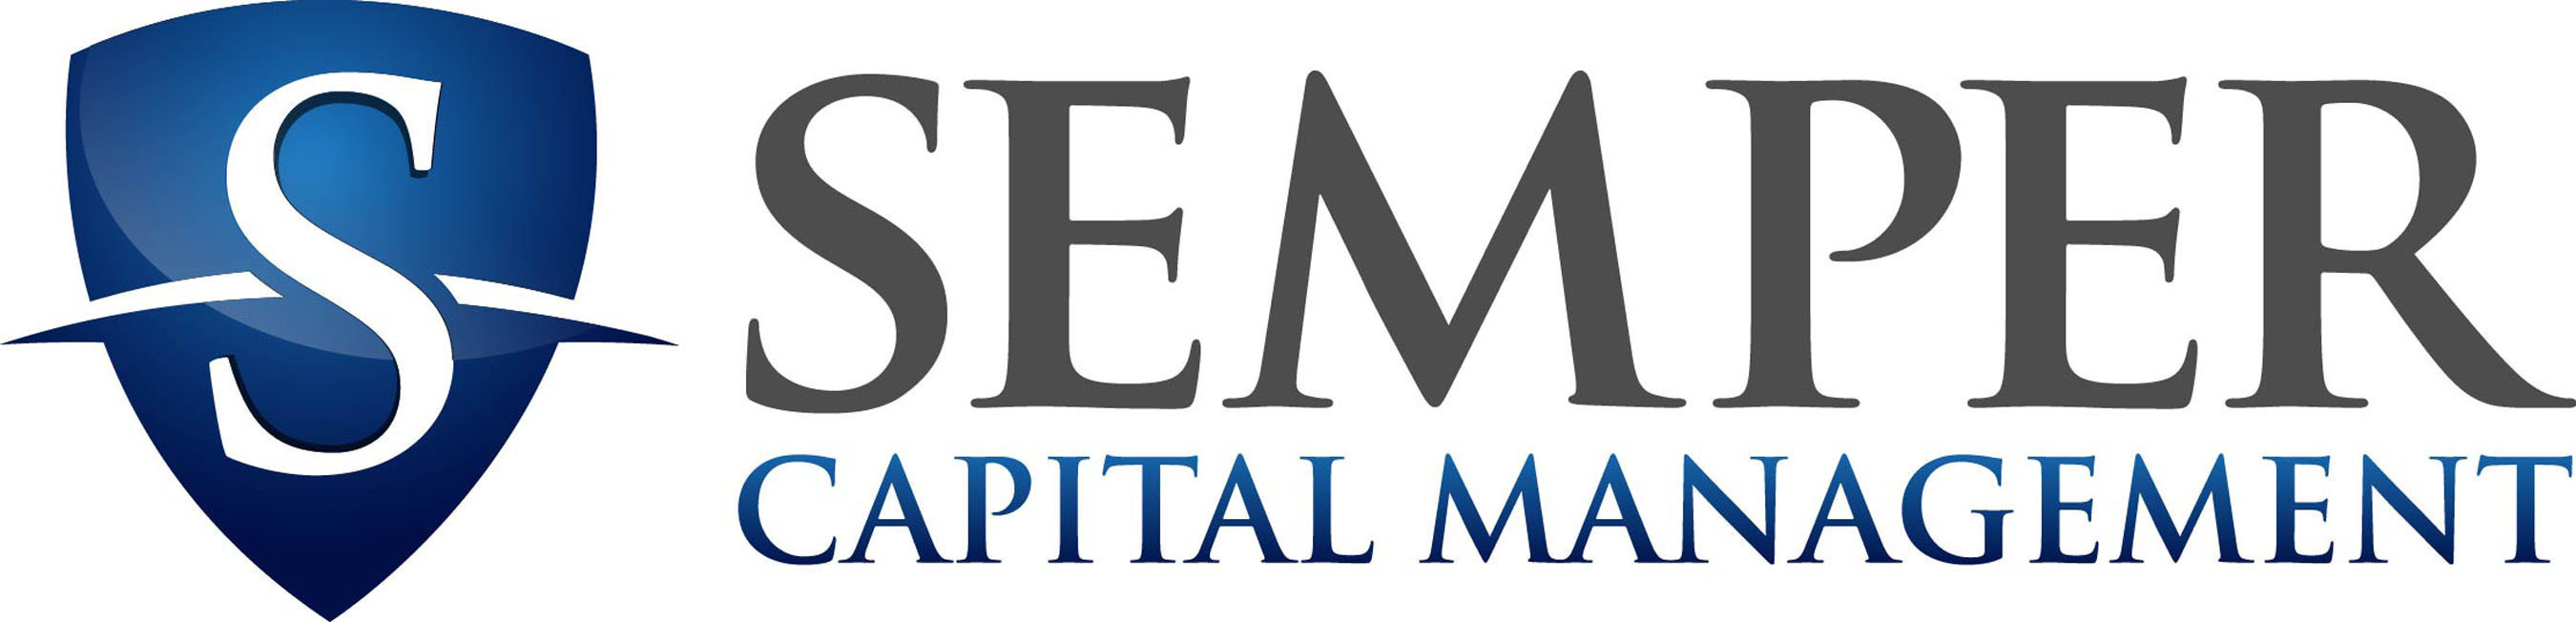 Semper Capital Management. (PRNewsFoto/Semper Capital Management) (PRNewsFoto/Semper Capital Management, L.P.)